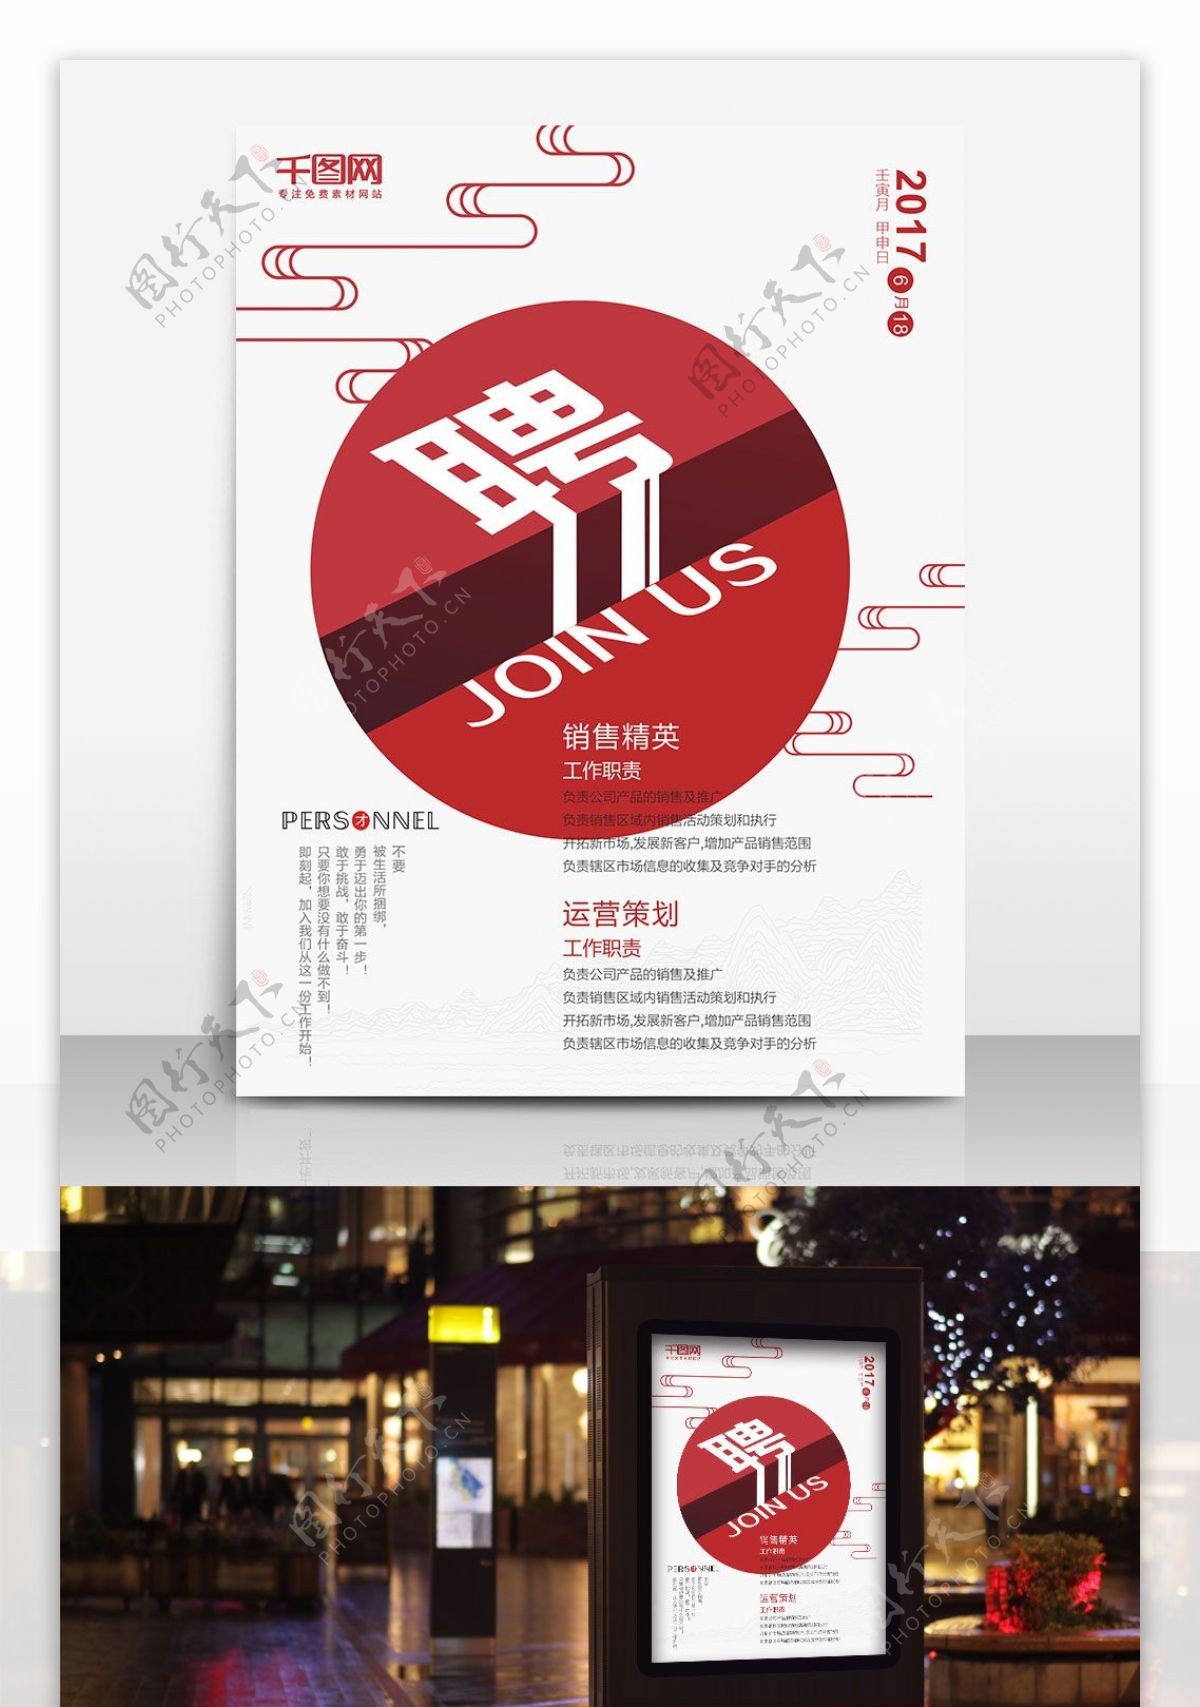 中国风简洁创意字体招聘海报